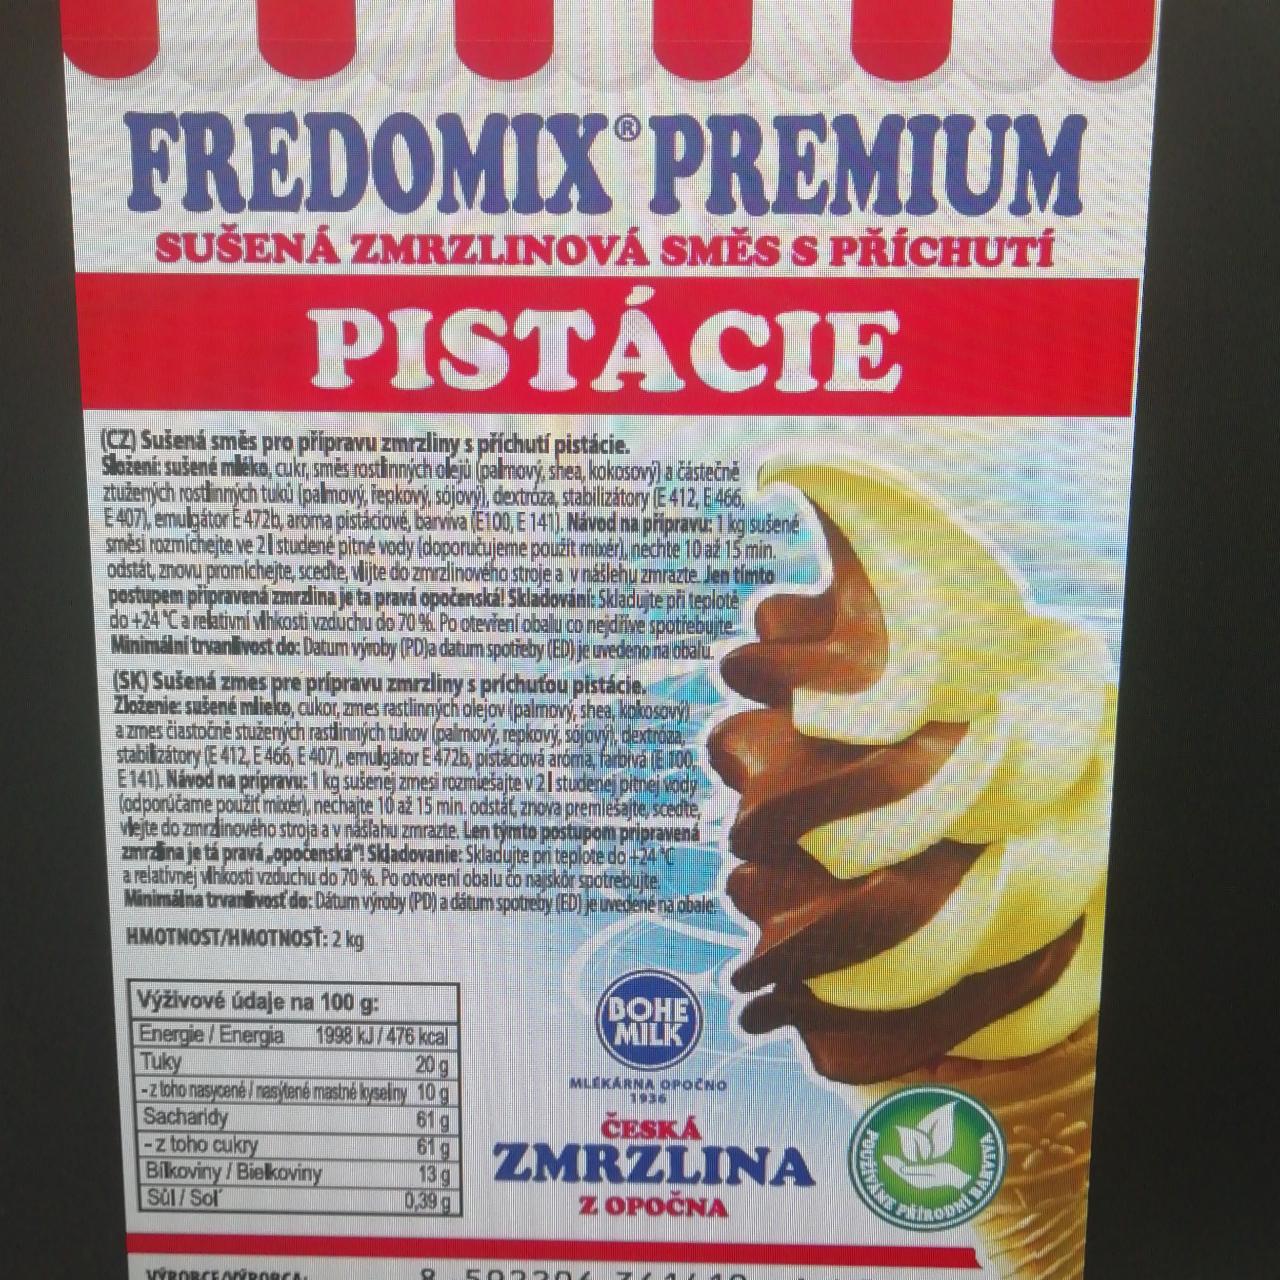 Fotografie - Fredomix premium Točená zmrzlina Opočno pistacie Bohemilk